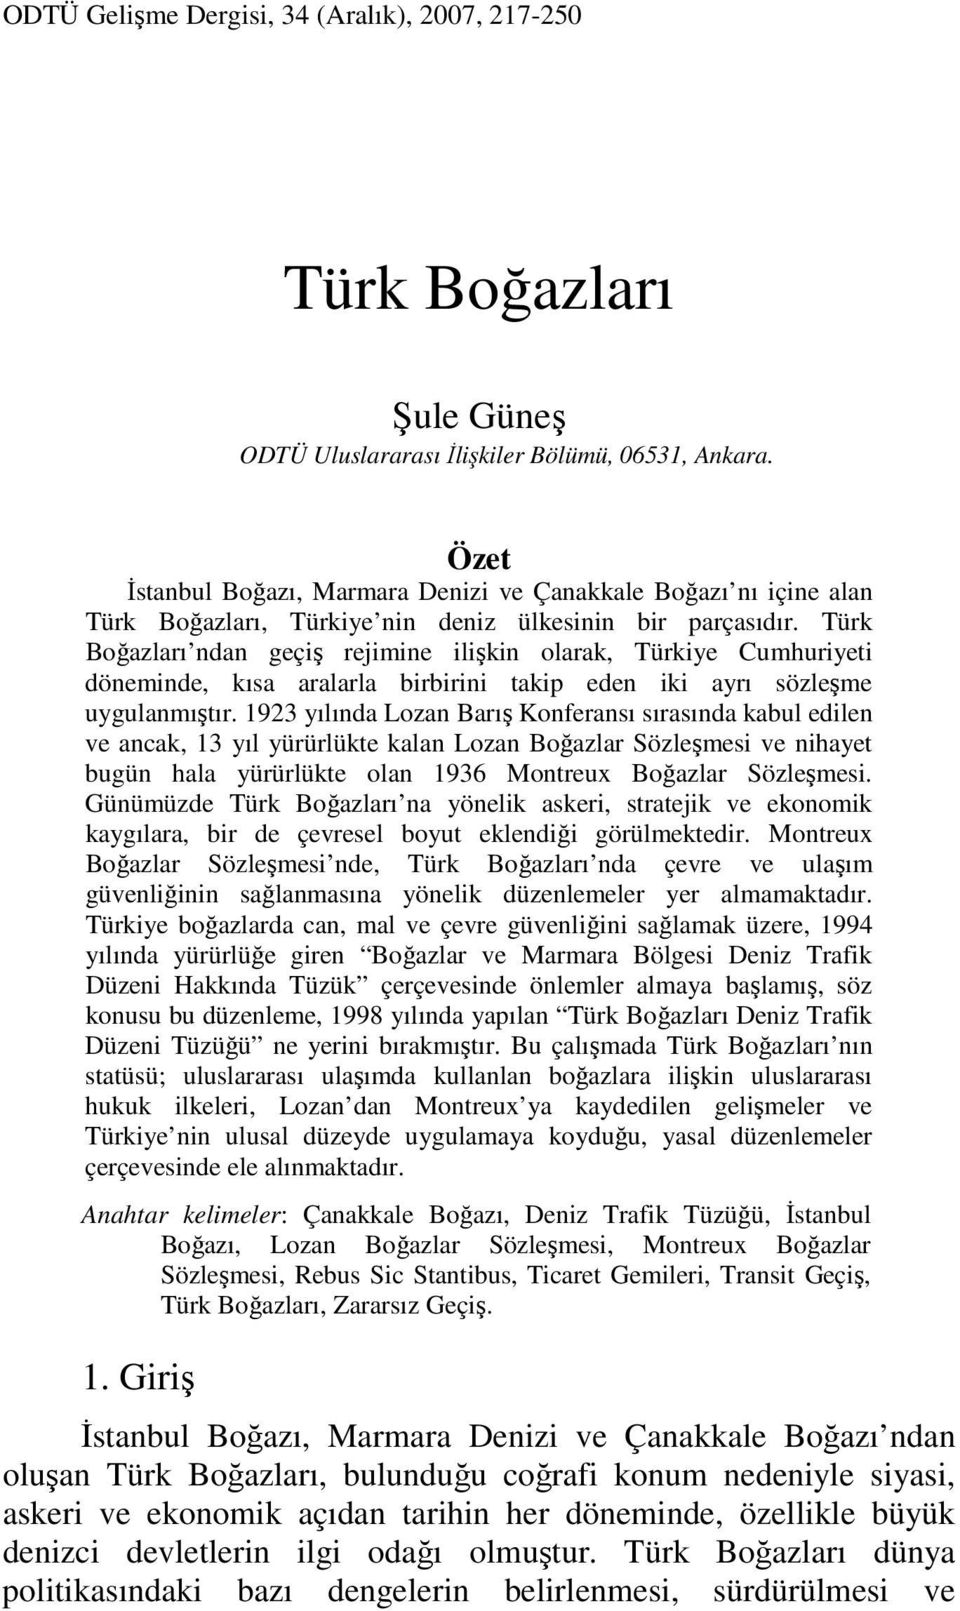 Türk Boğazları ndan geçiş rejimine ilişkin olarak, Türkiye Cumhuriyeti döneminde, kısa aralarla birbirini takip eden iki ayrı sözleşme uygulanmıştır.